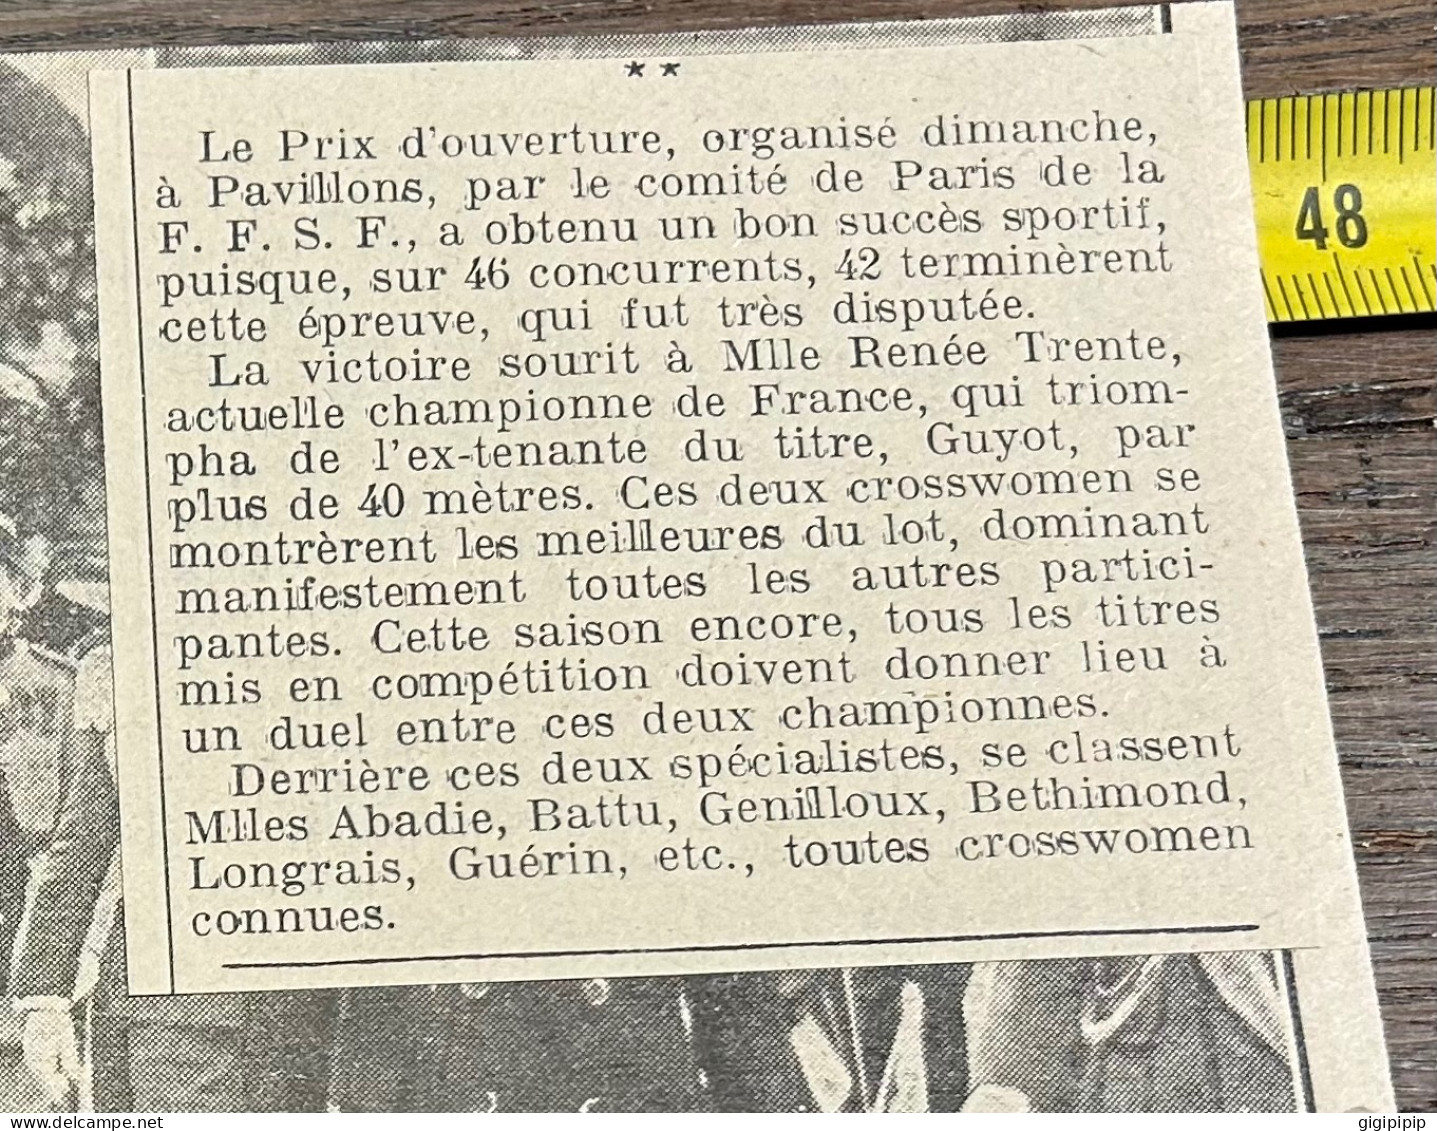 1930 GHI3 PASSAGE DU CROSS FEMININ D'OUVERTURE à Pavillons Renée Trente Abadie Genilloux, Bethimond, Longrais Guérin, - Collections